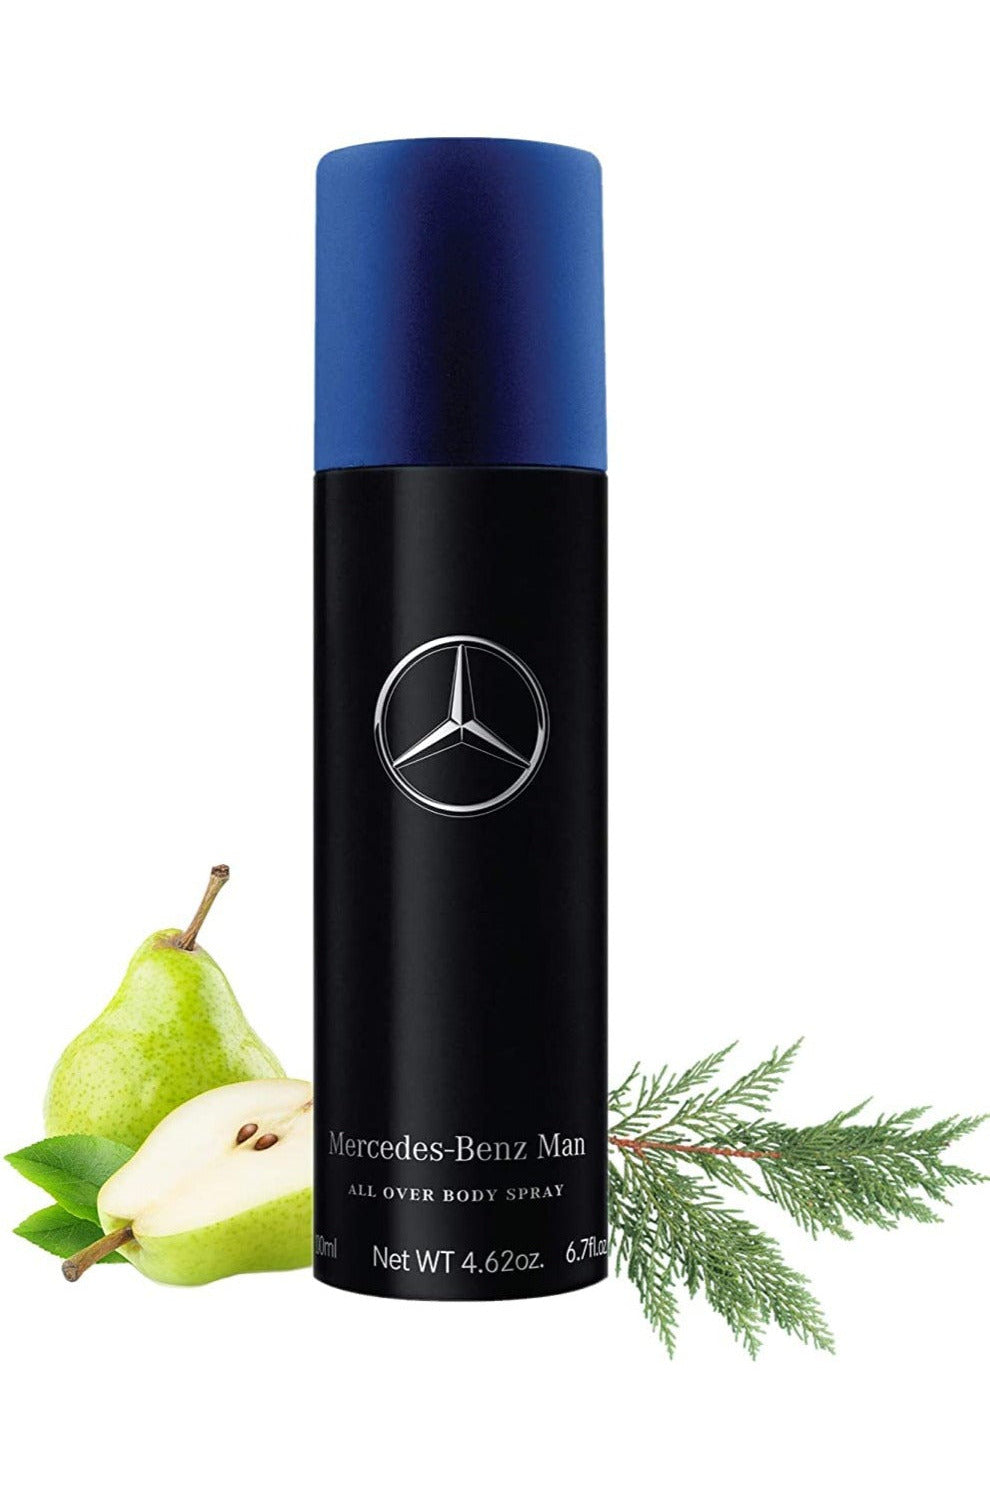 Buy Mercedes Benz Blue Men Deodorant - 200ml in Pakistan